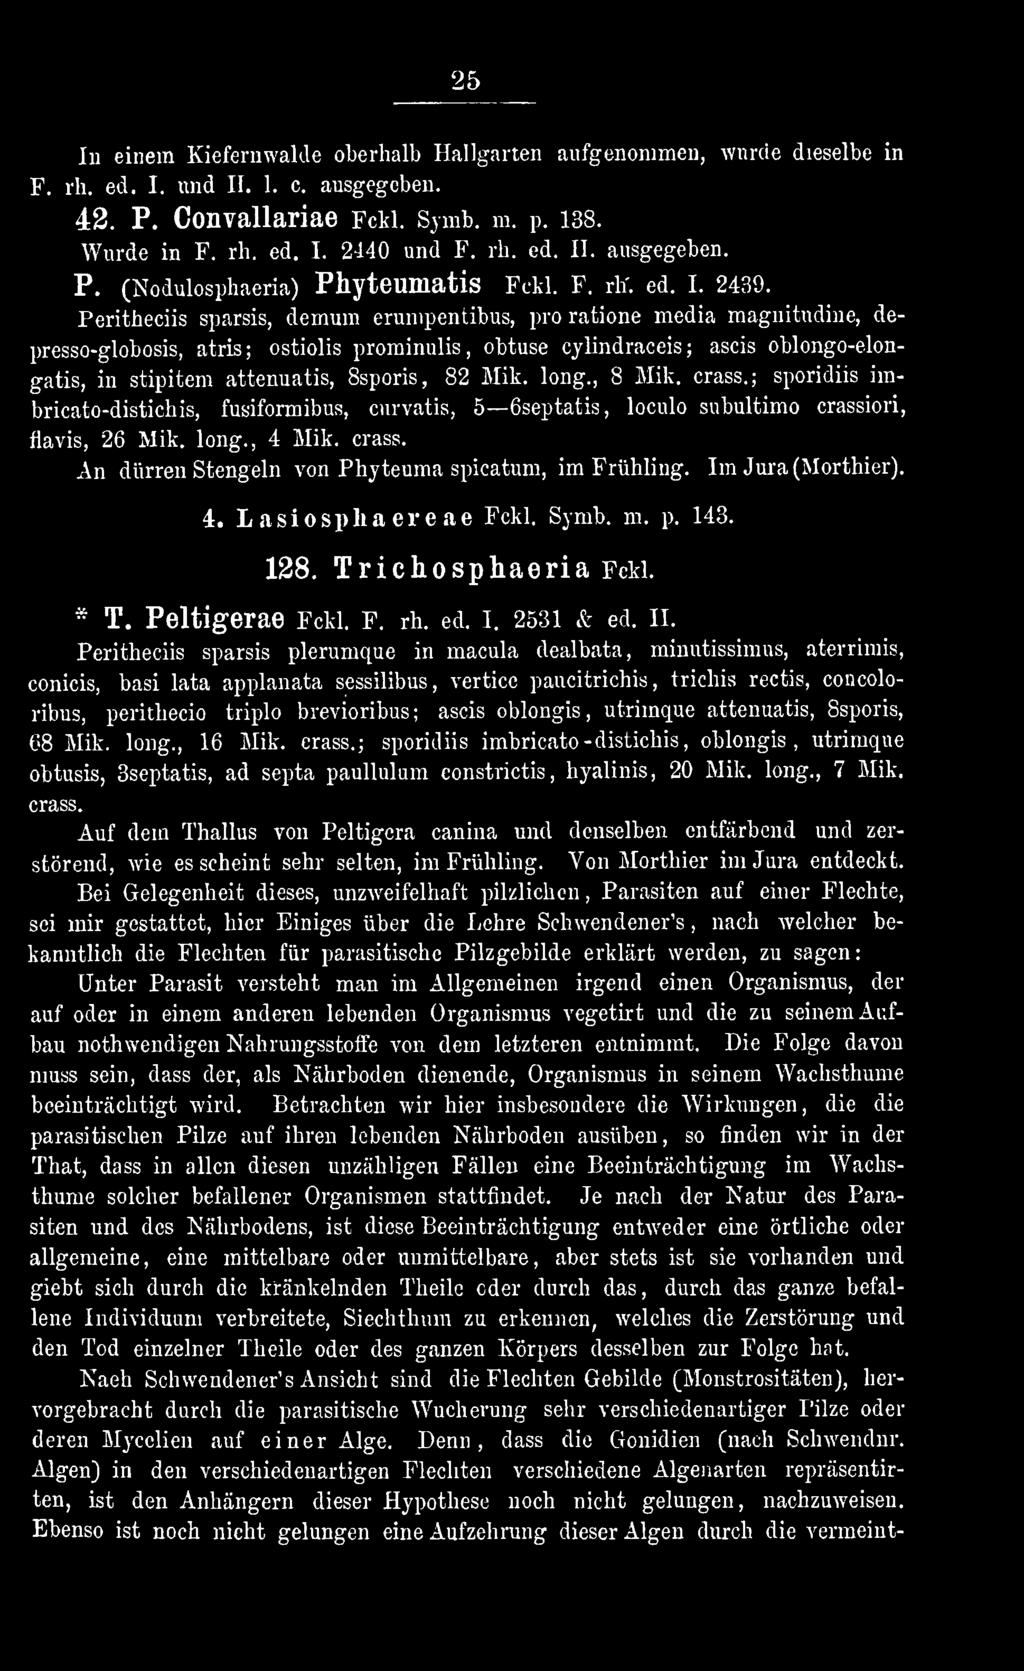 Im Jura (Morthier). 4. Lasiosphaereae Fckl. Symb. m. p. 143. 128. Trichosphaeria Fckl. * T. Peltigerae Fckl. F. rh. ed. I. 2531 & ed. II.